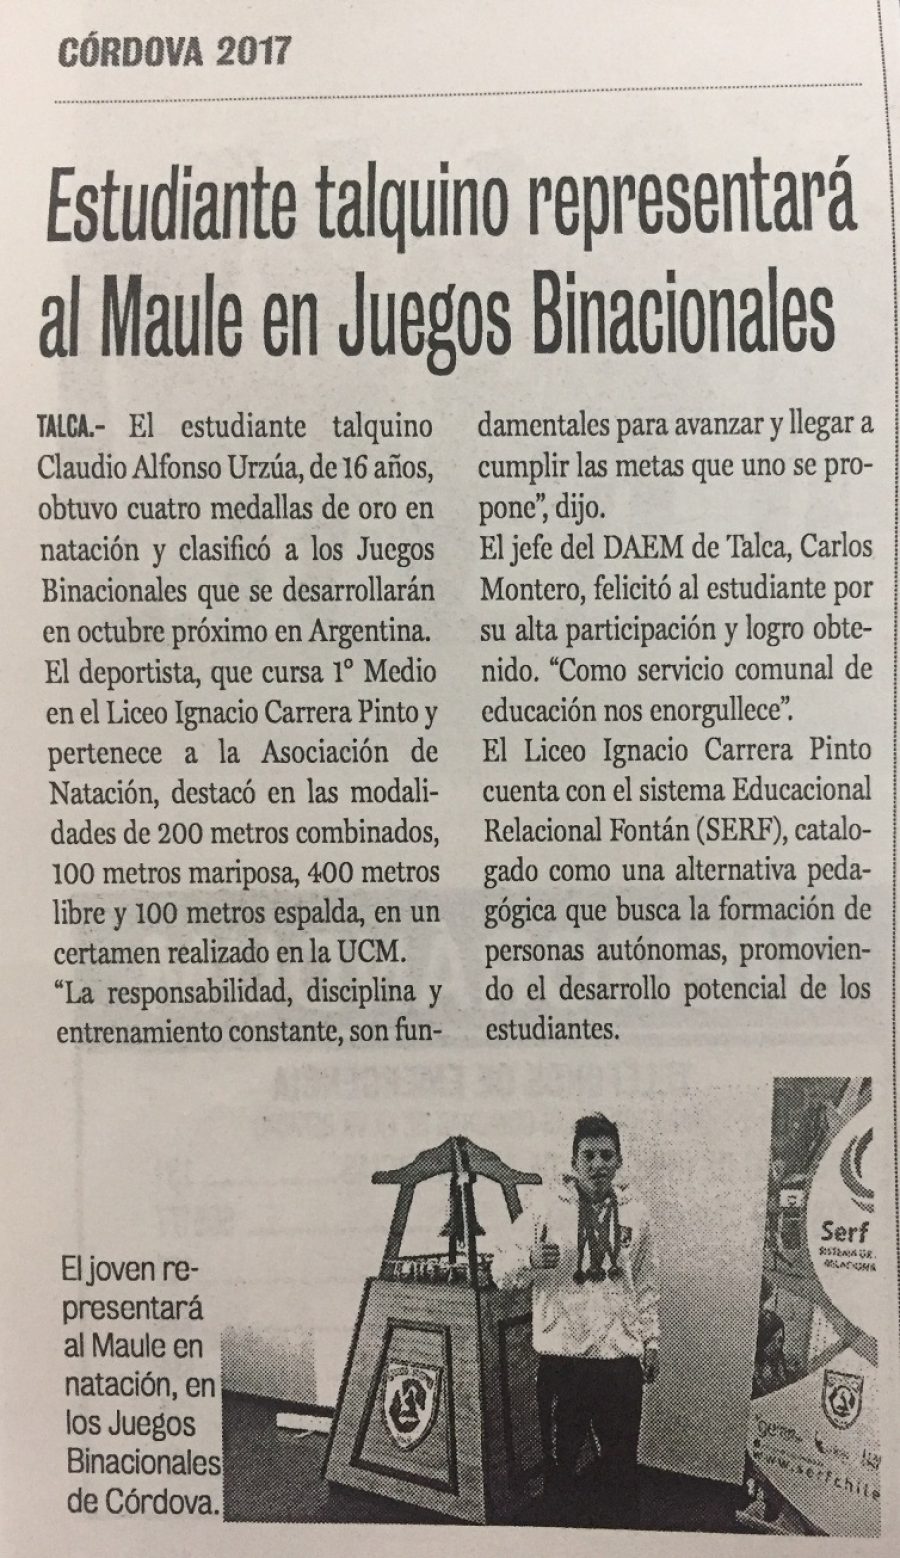 24 de agosto en Diario La Prensa: “Estudiante talquino representará al Maule en Juegos Binacionales”